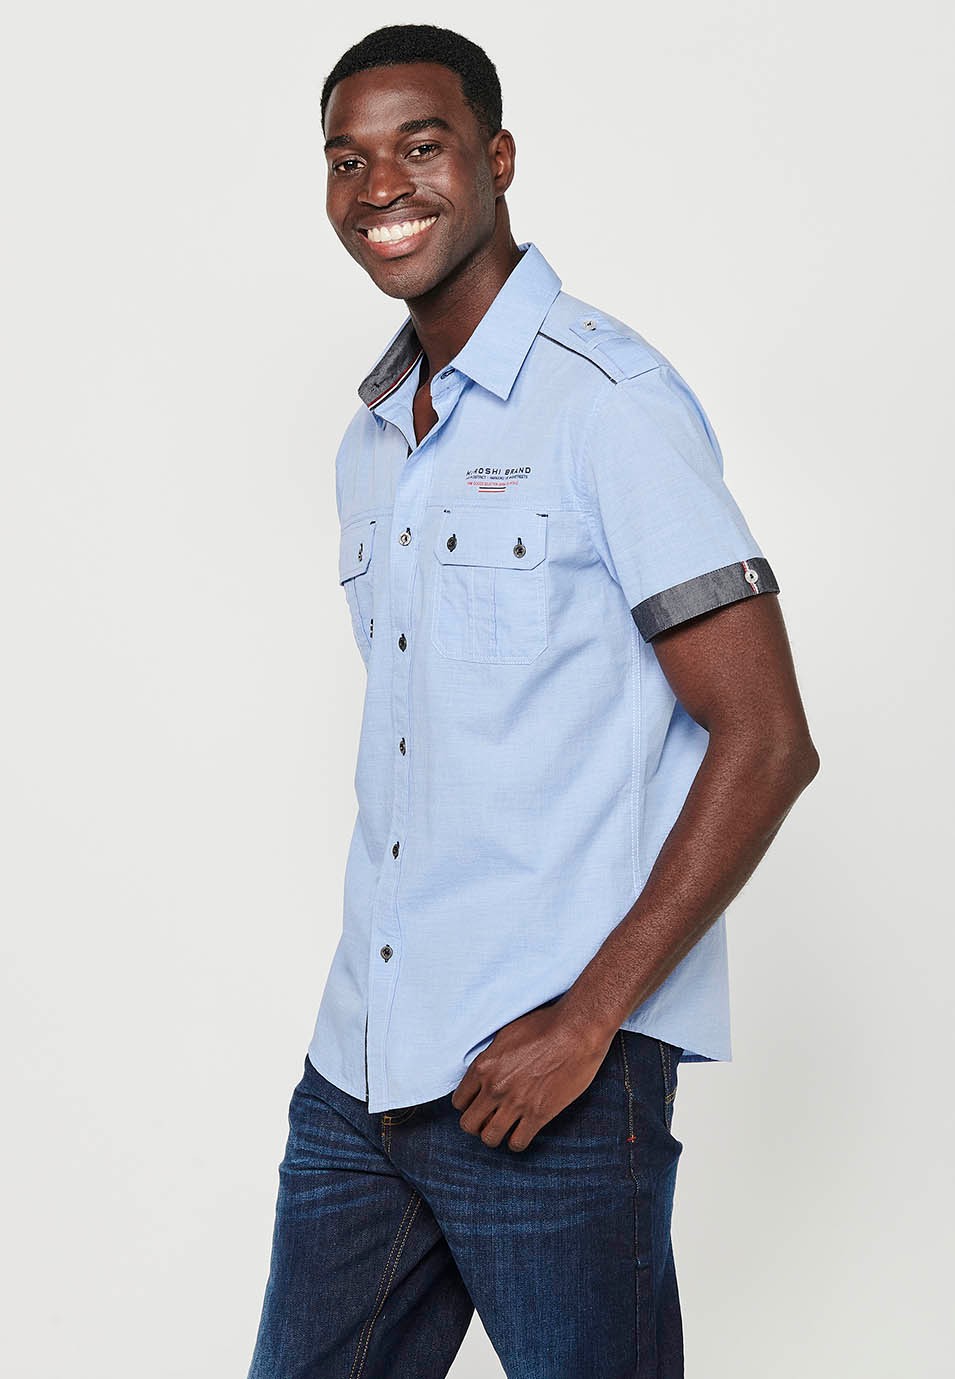 Cotton shirt, short sleeve, shoulder details, blue color for men 8